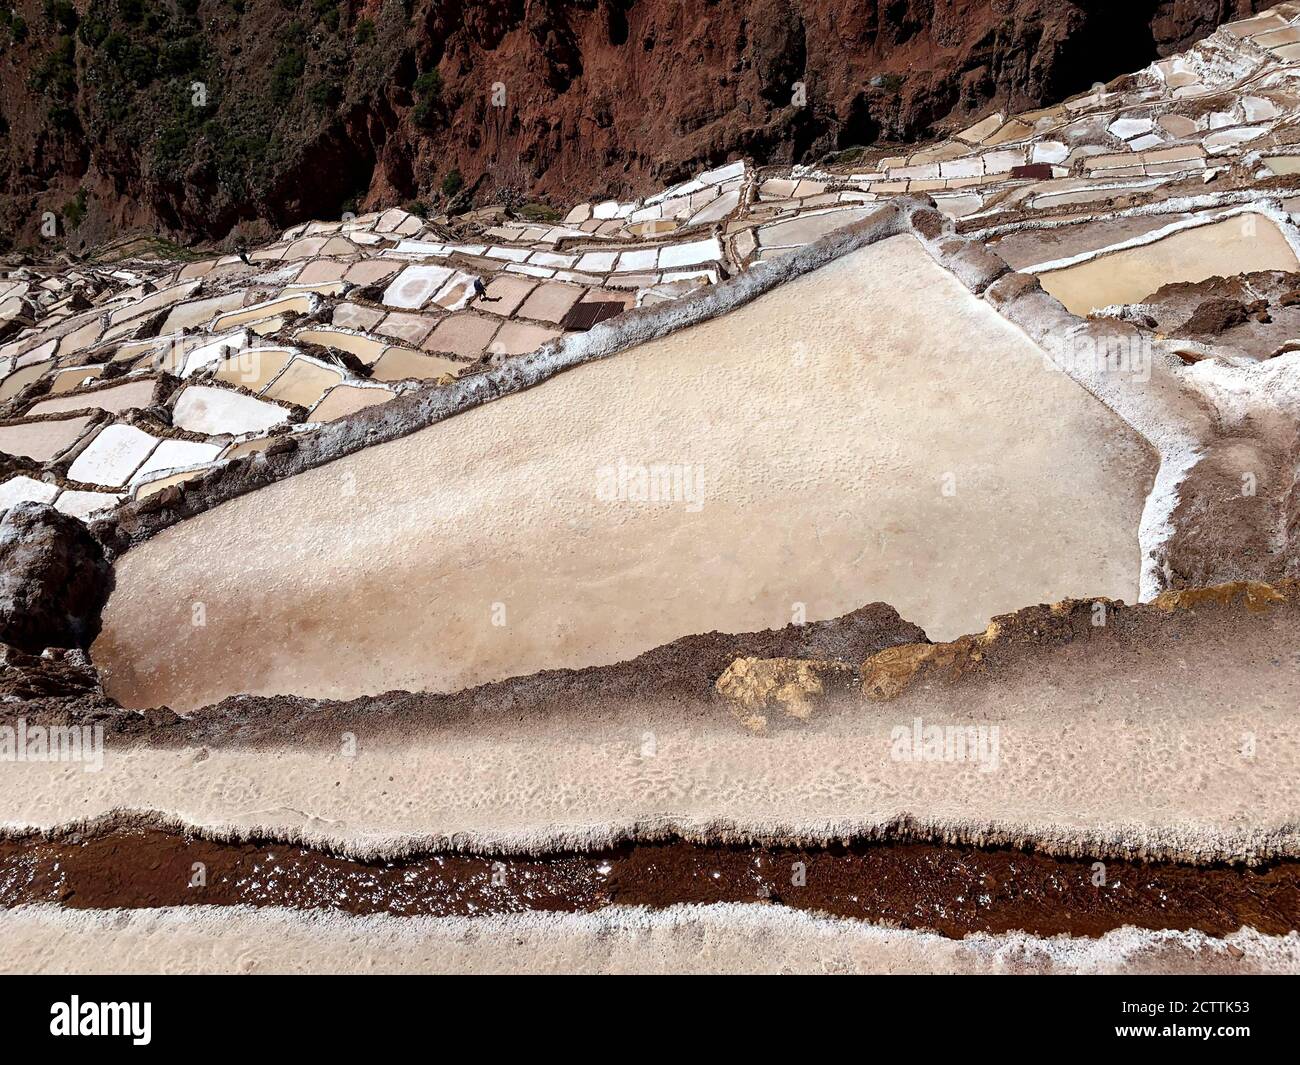 Mines de sel à Maras, au Pérou. Salineras de Maras, montagne des Andes. Immense bac à sel. Célèbre sel péruvien.Vallée sacrée des Incas. Paysage génial. Banque D'Images